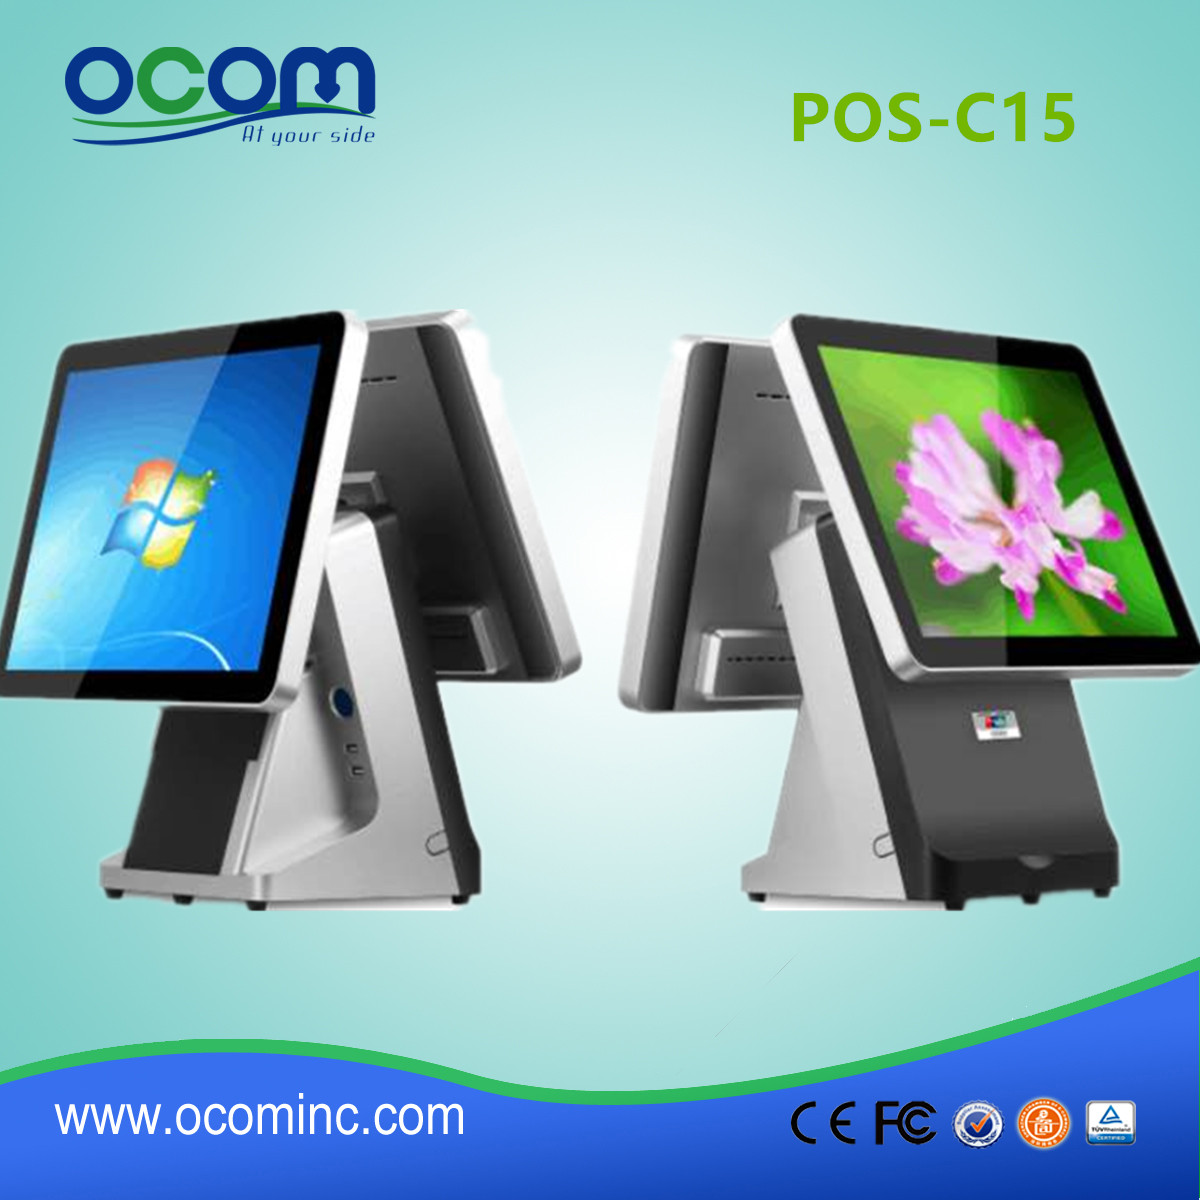 POS-C15 --- China gemaakt touchscreen pos terminal met thermische printer alles in een prijs